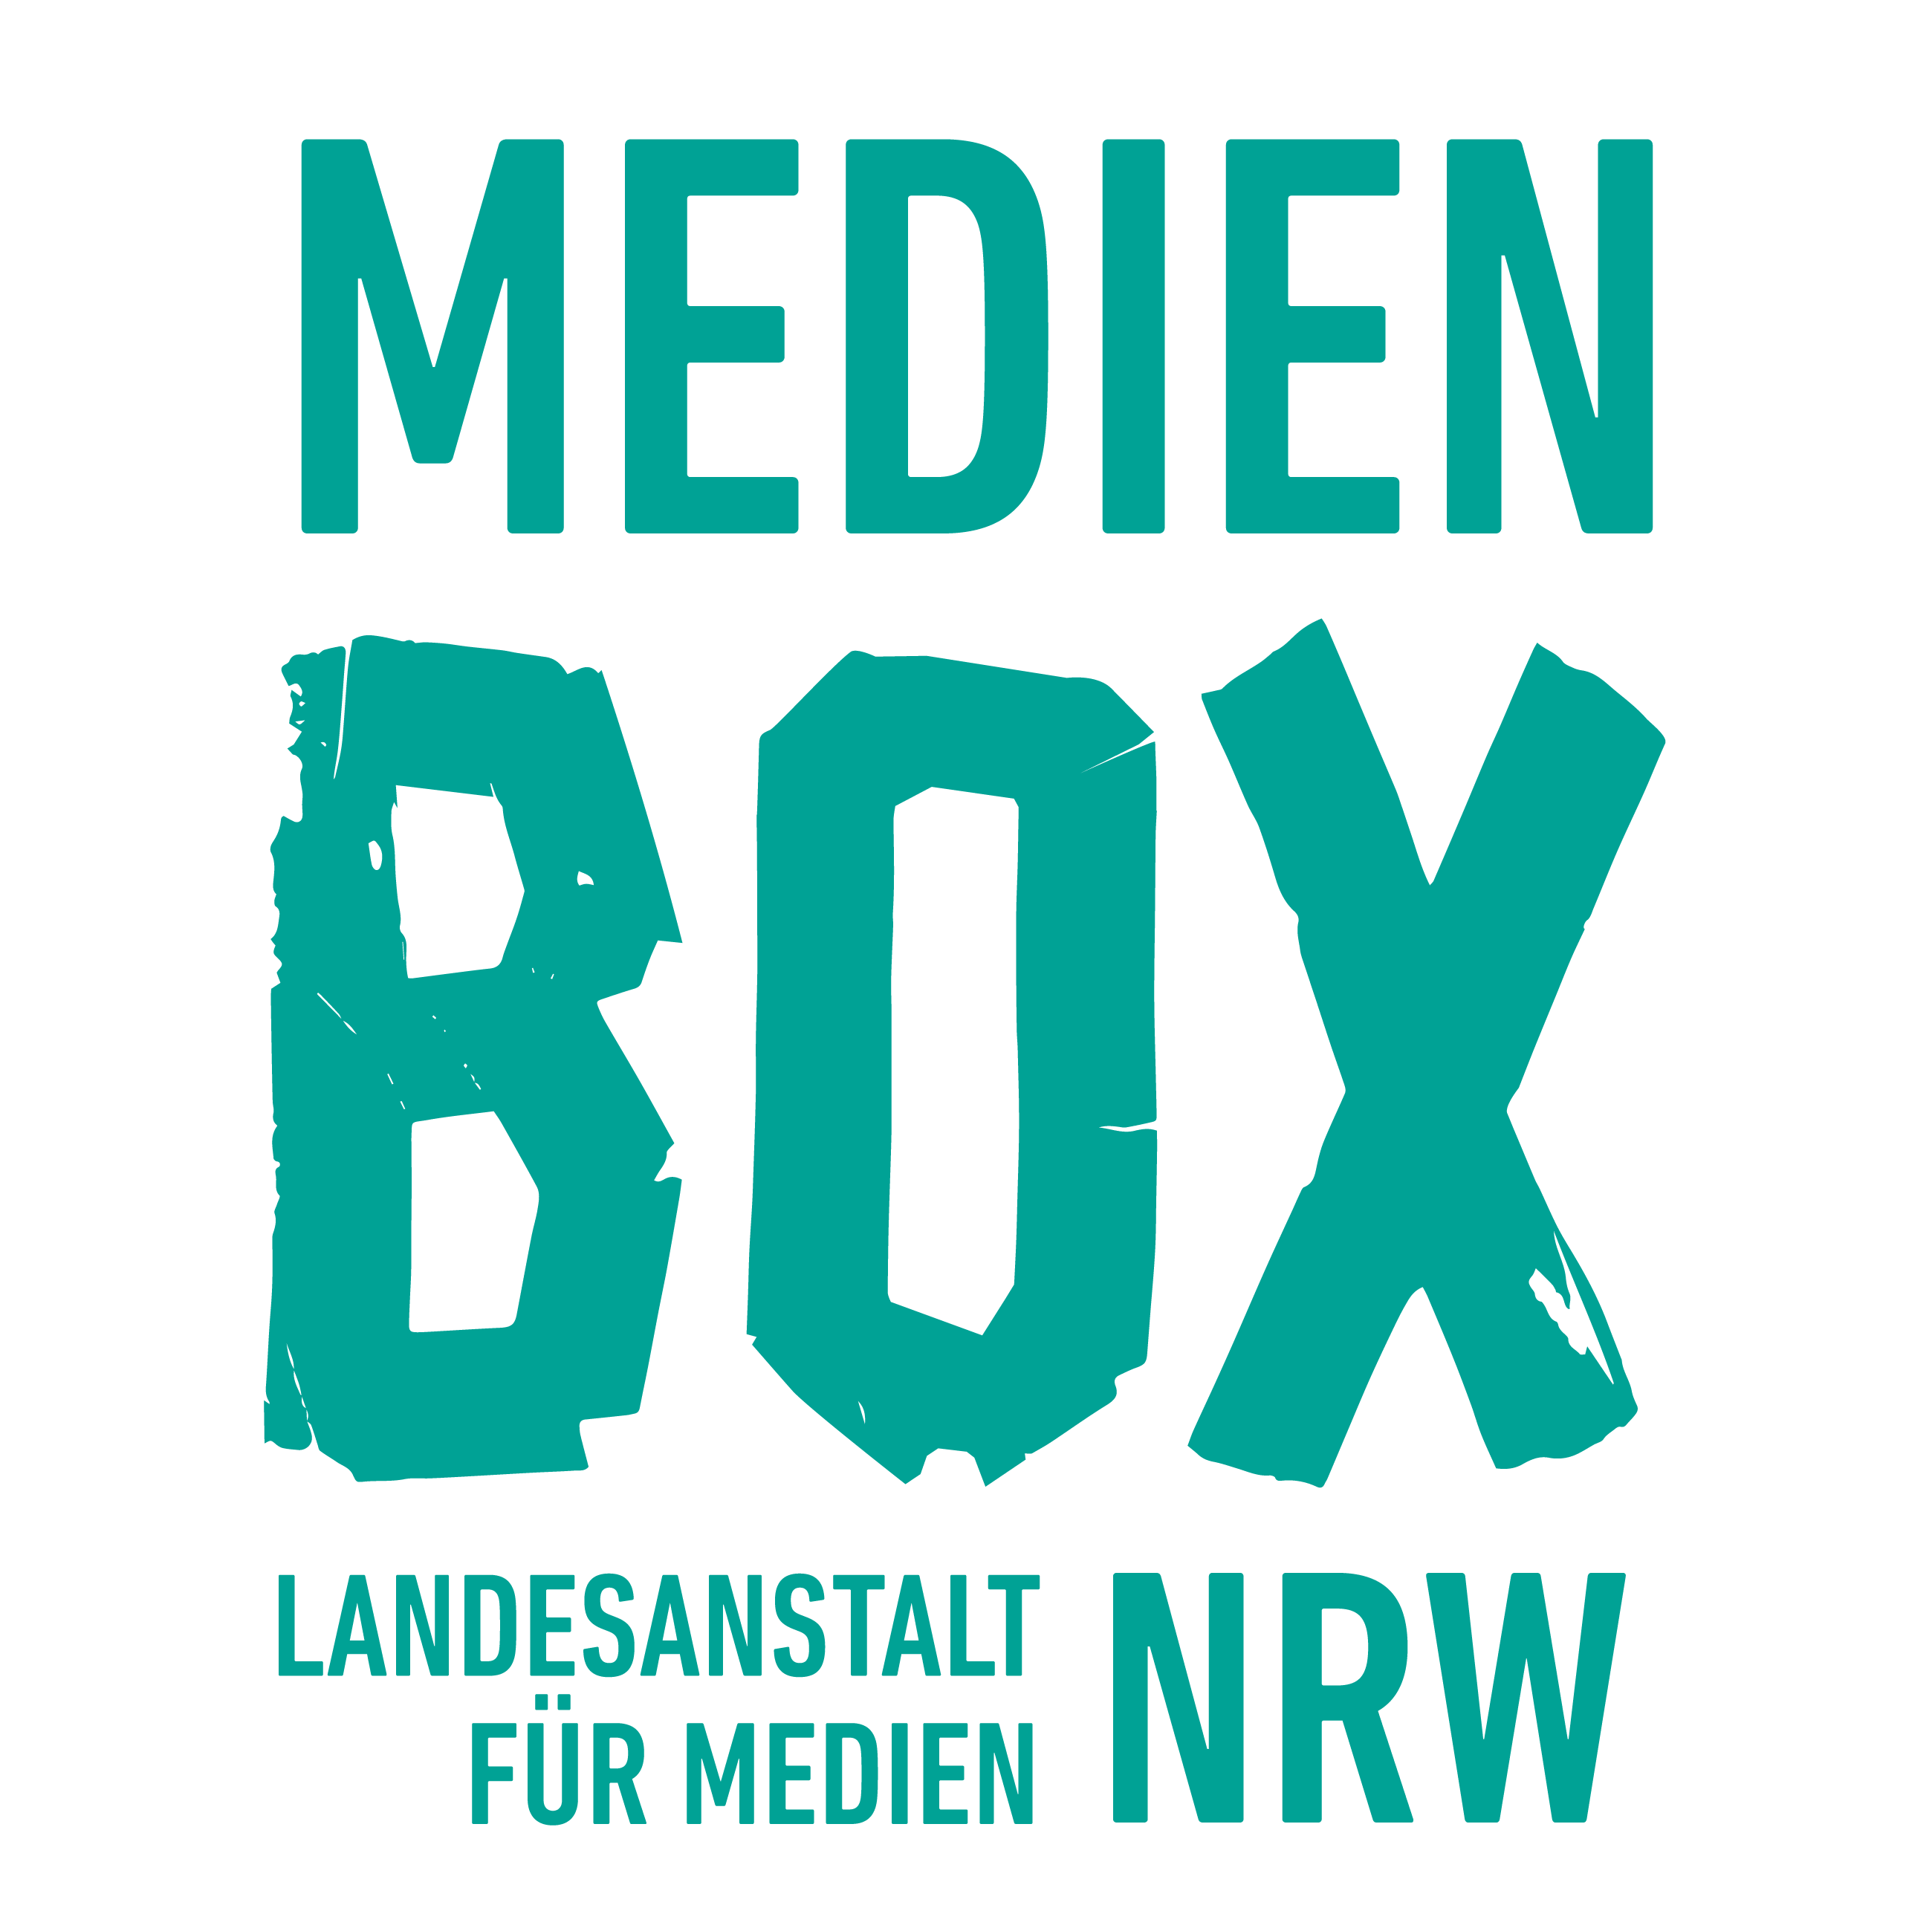 (c) Medienbox-nrw.de